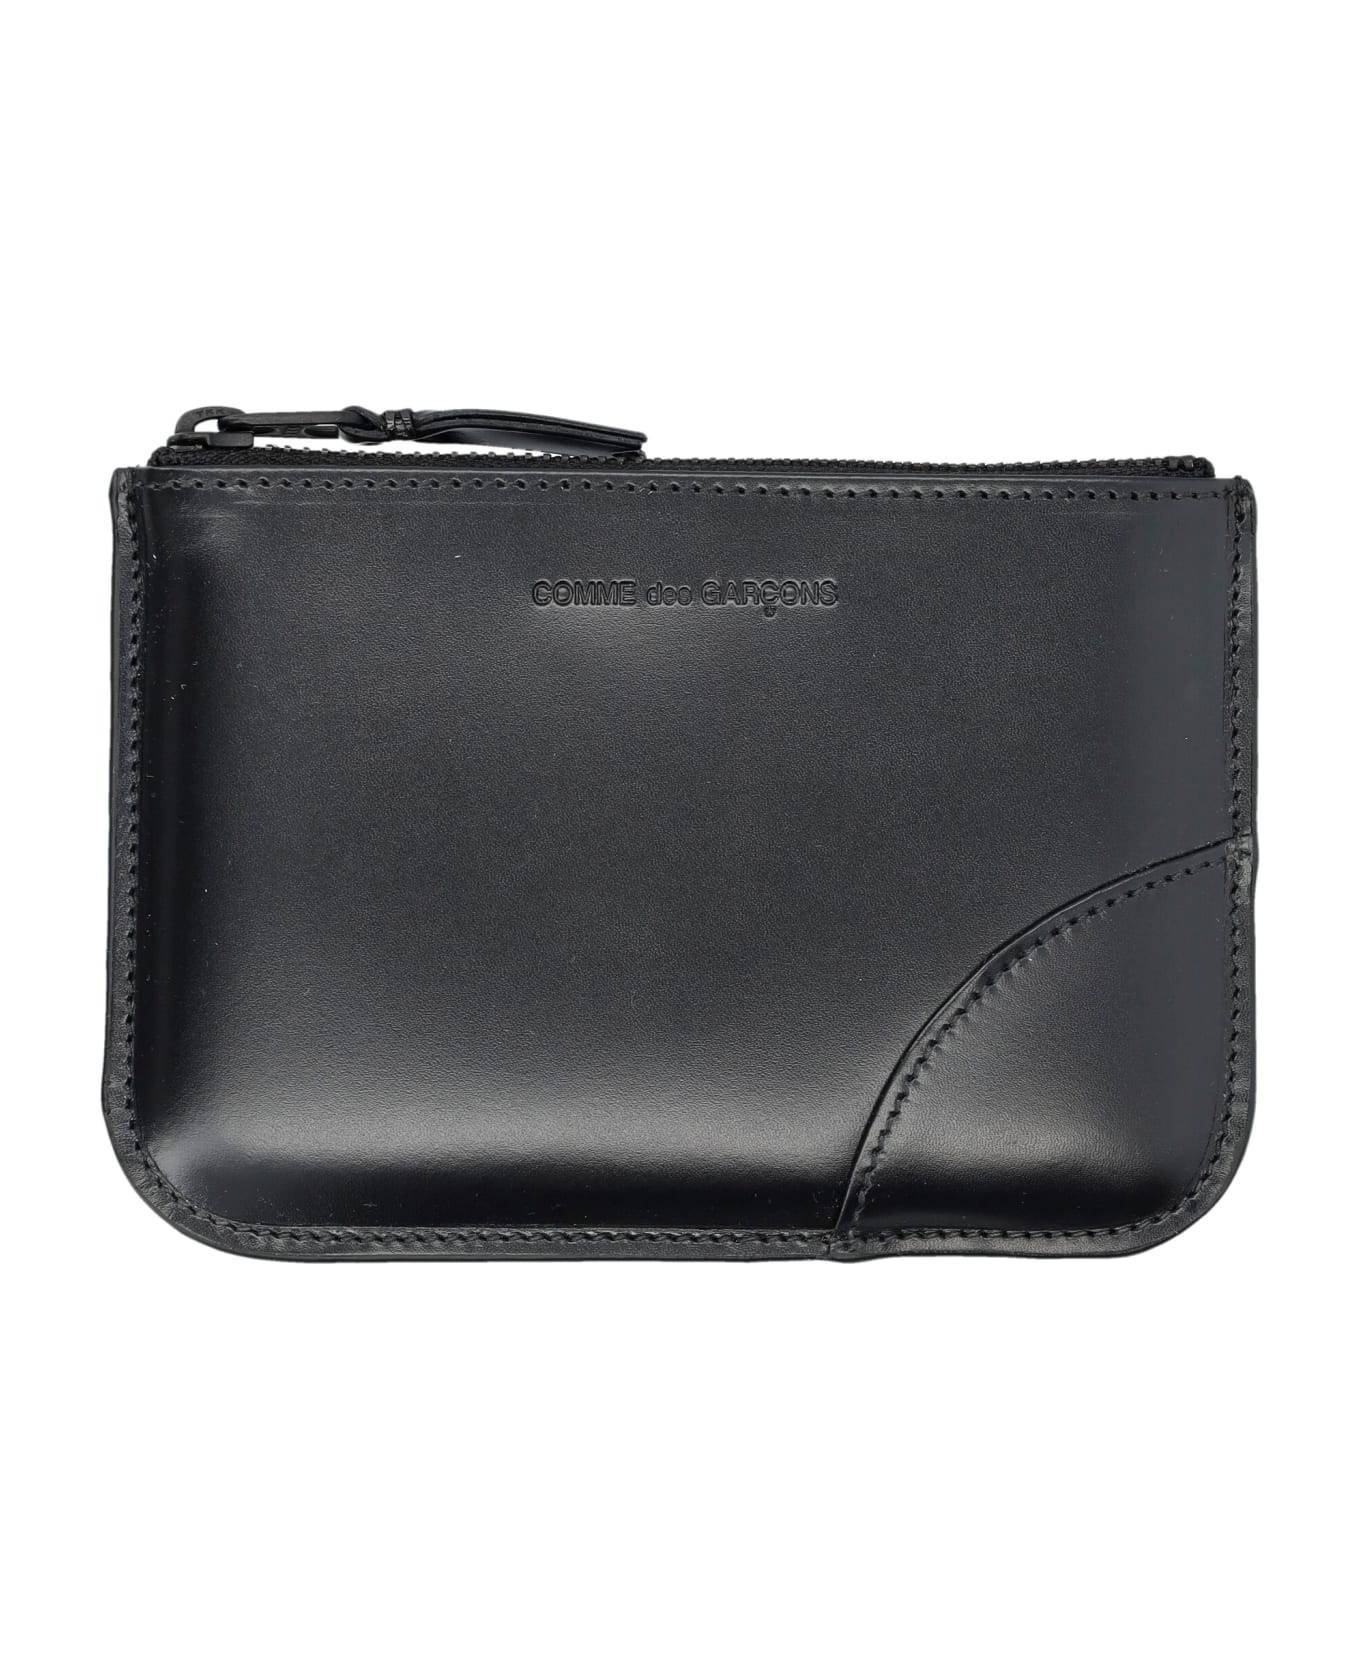 Comme des Garçons Wallet Xsmall Classic Leather Pouch - BLACK 財布